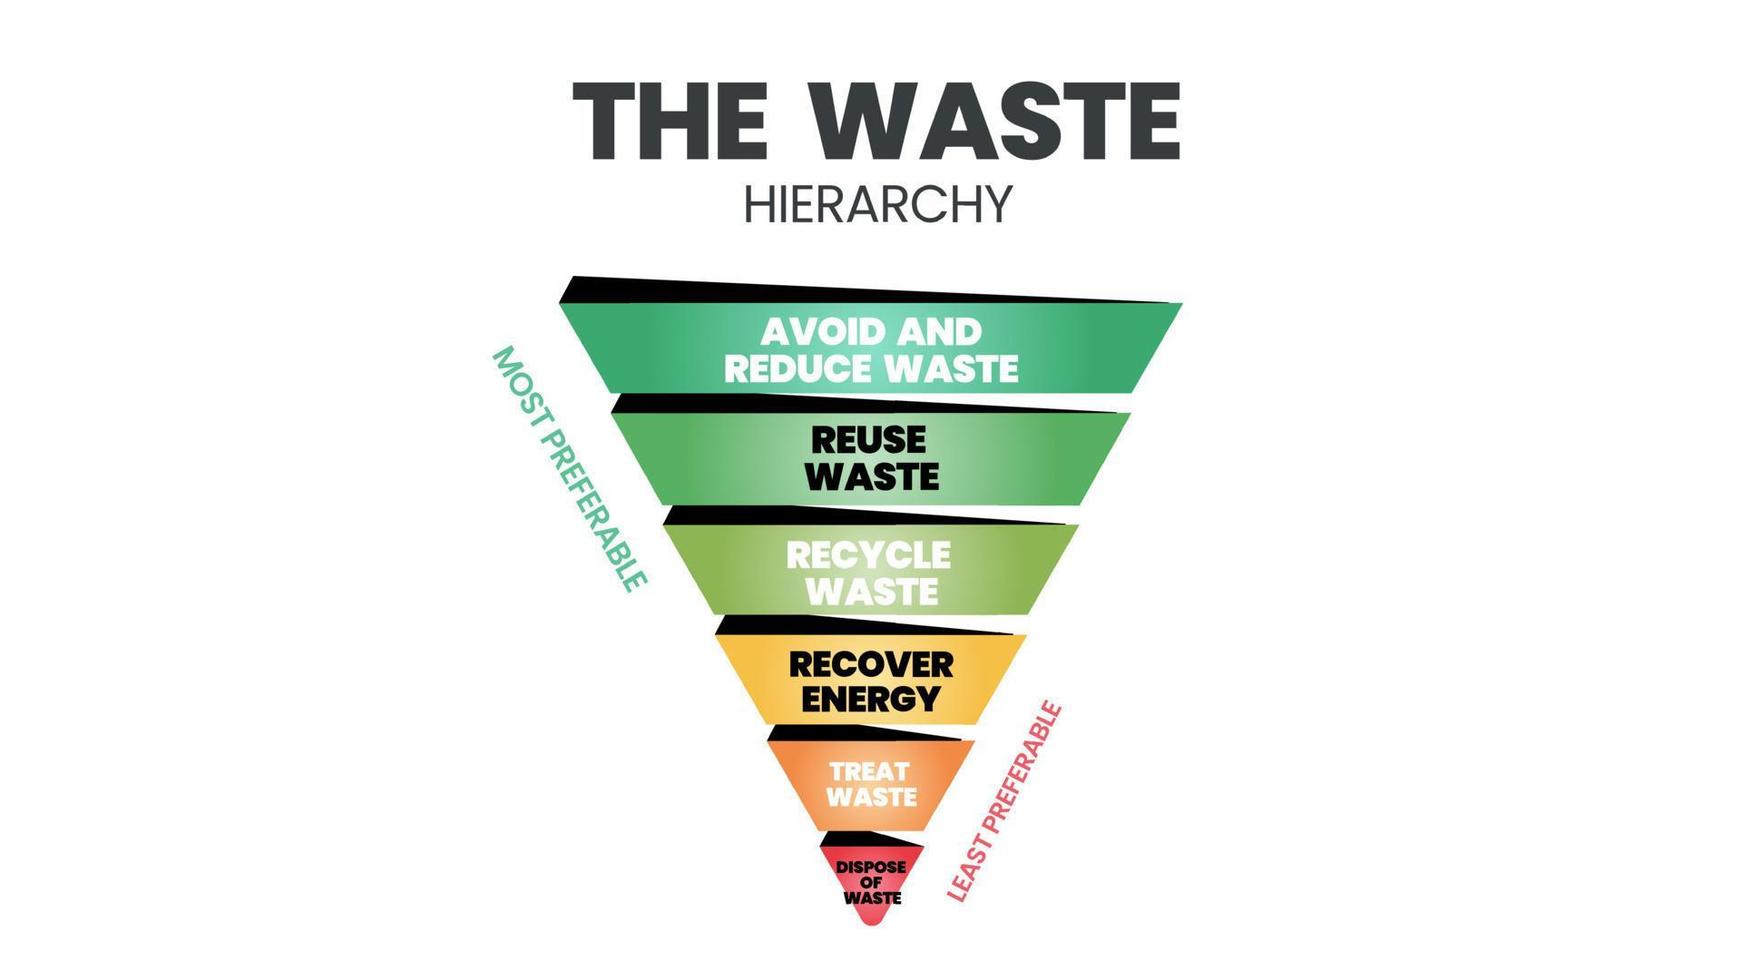 o vetor de hierarquia de resíduos é um cone ilustrativo na avaliação dos processos de proteção do meio ambiente ao lado do consumo de recursos e energia. um diagrama de funil tem 6 estágios de gerenciamento de resíduos